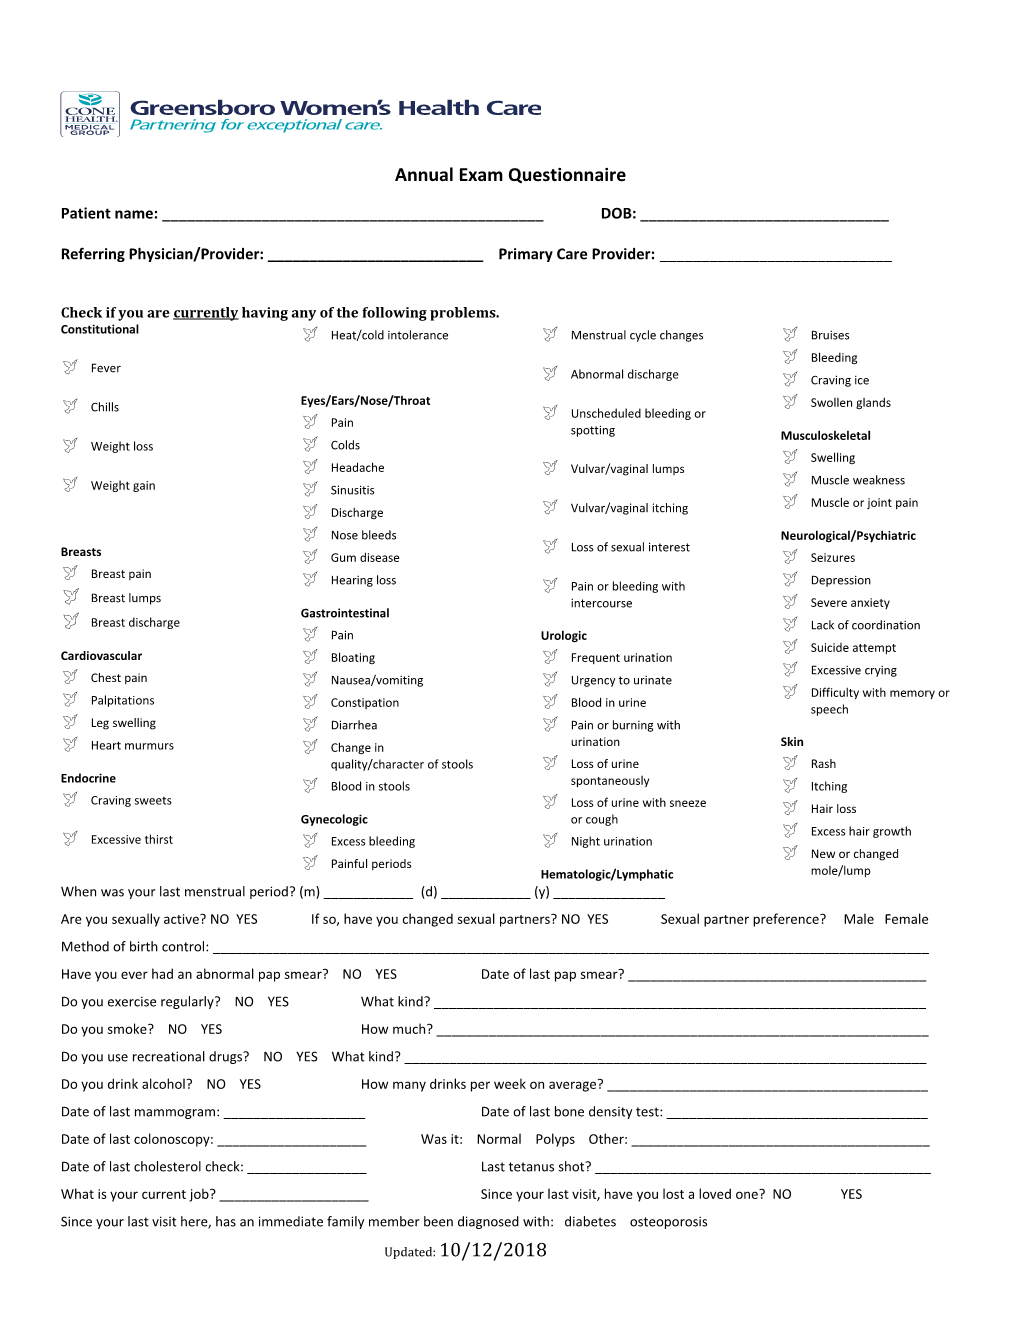 Annual Exam Questionnaire